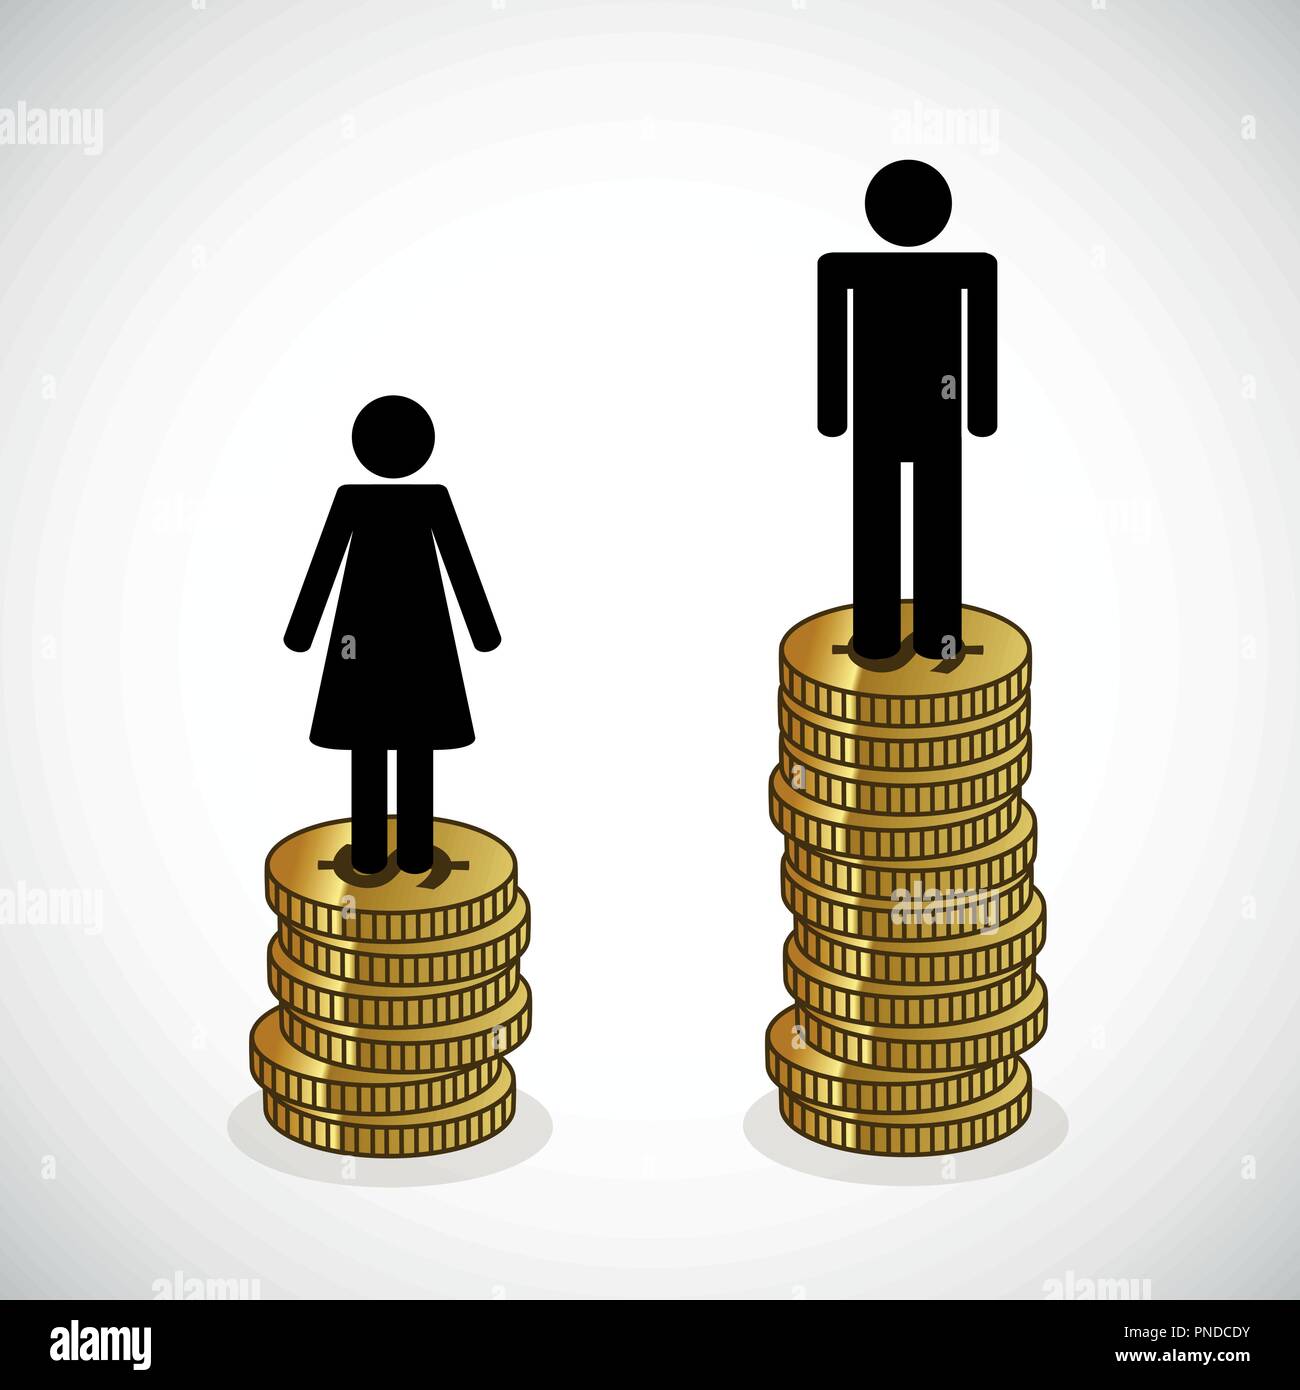 Mann und Frau stehen auf einem Turm von Geld Infografik Vektor-illustration EPS 10. Stock Vektor